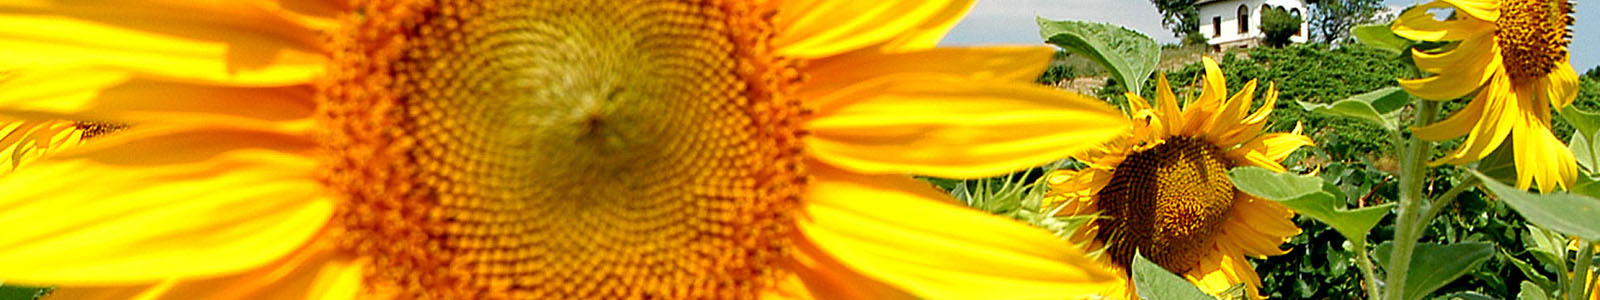 Großaufnahme einer Sonnnblume ©Feuerbach